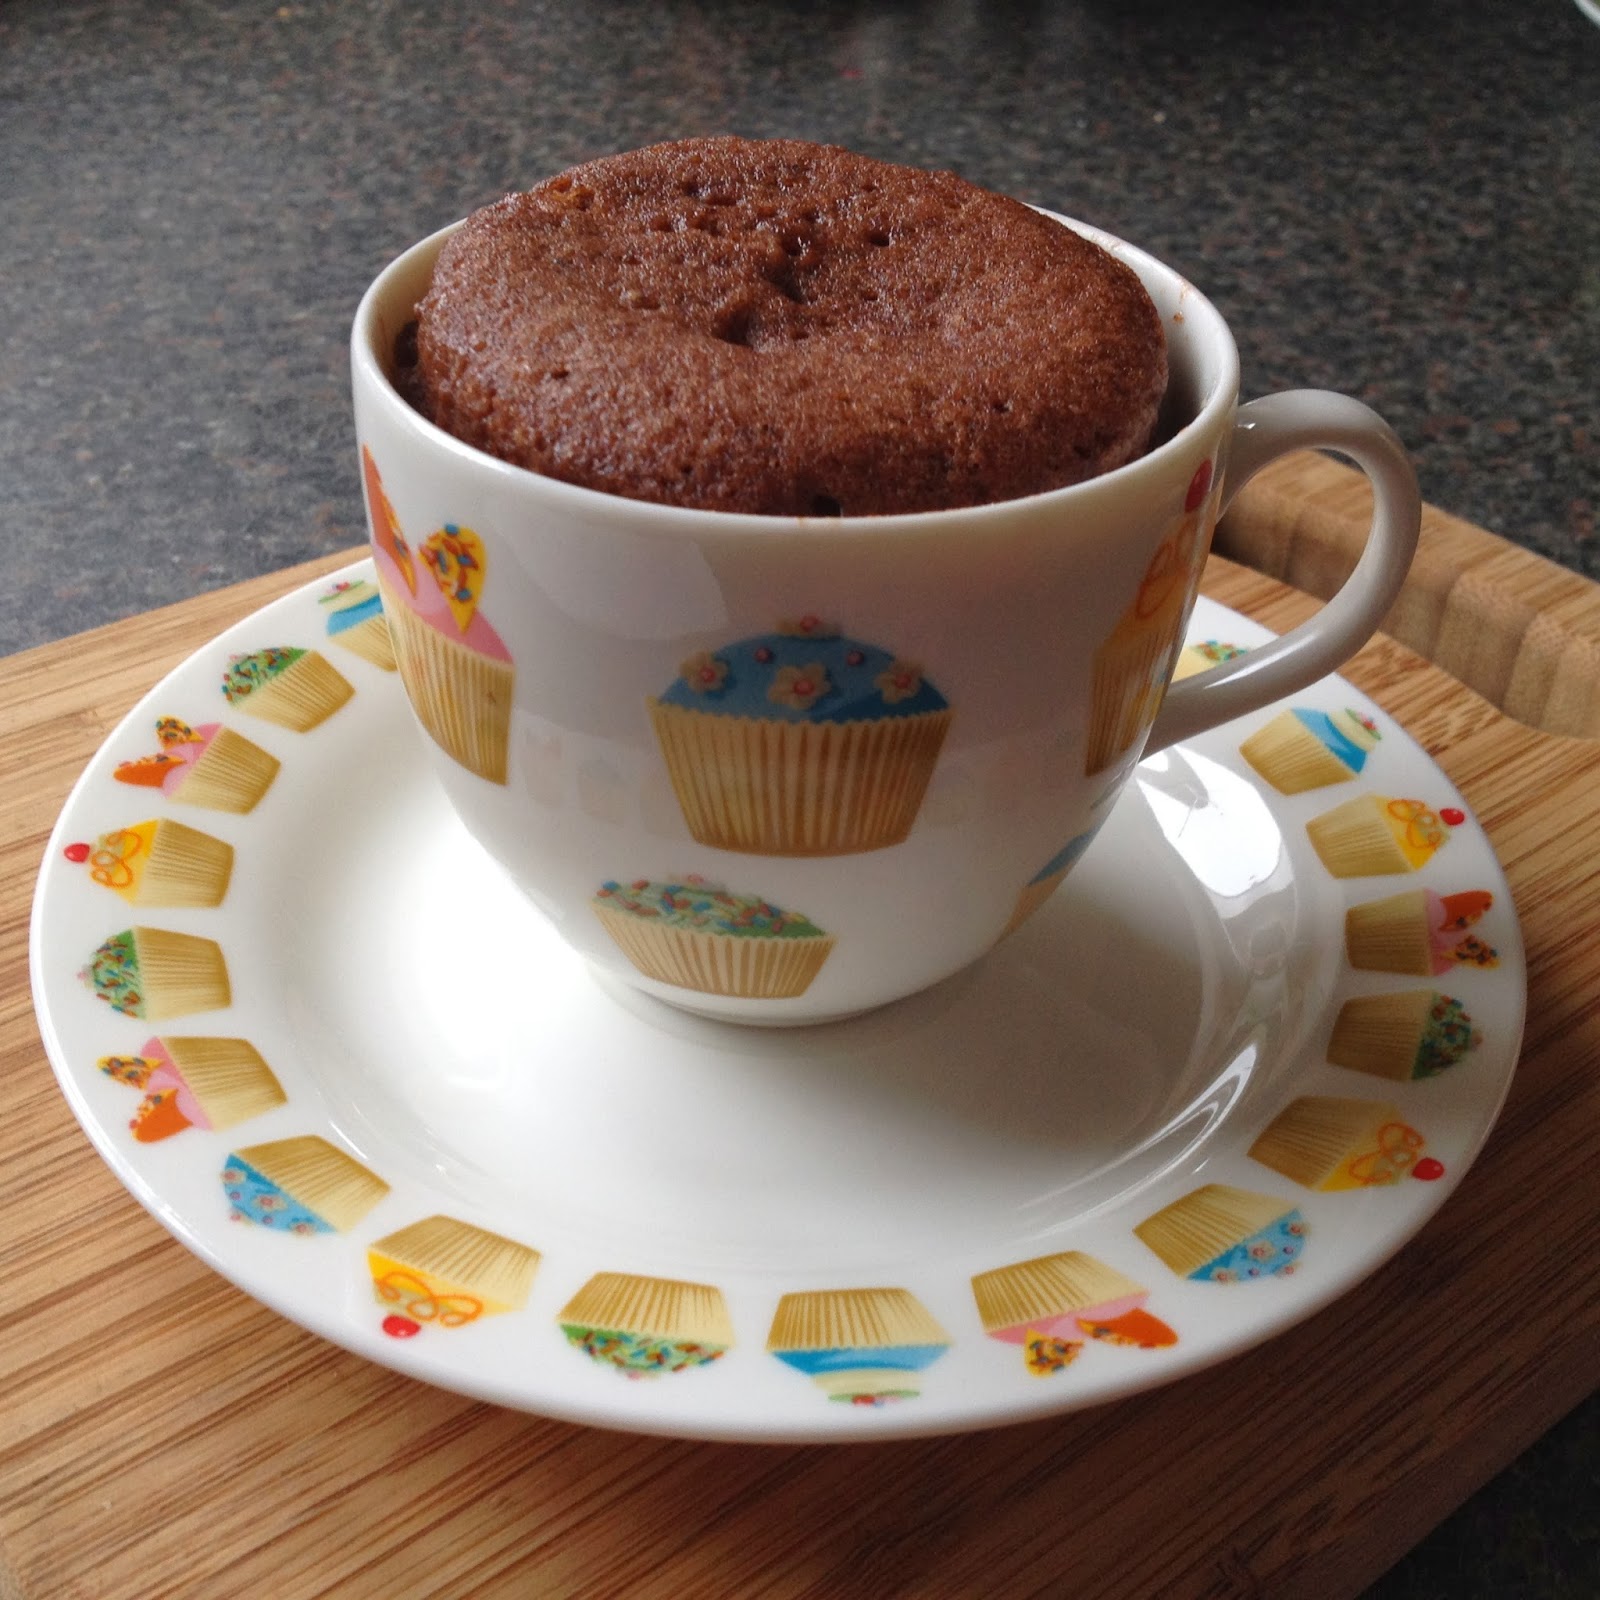 Chocolate Cake in a Mug recipe